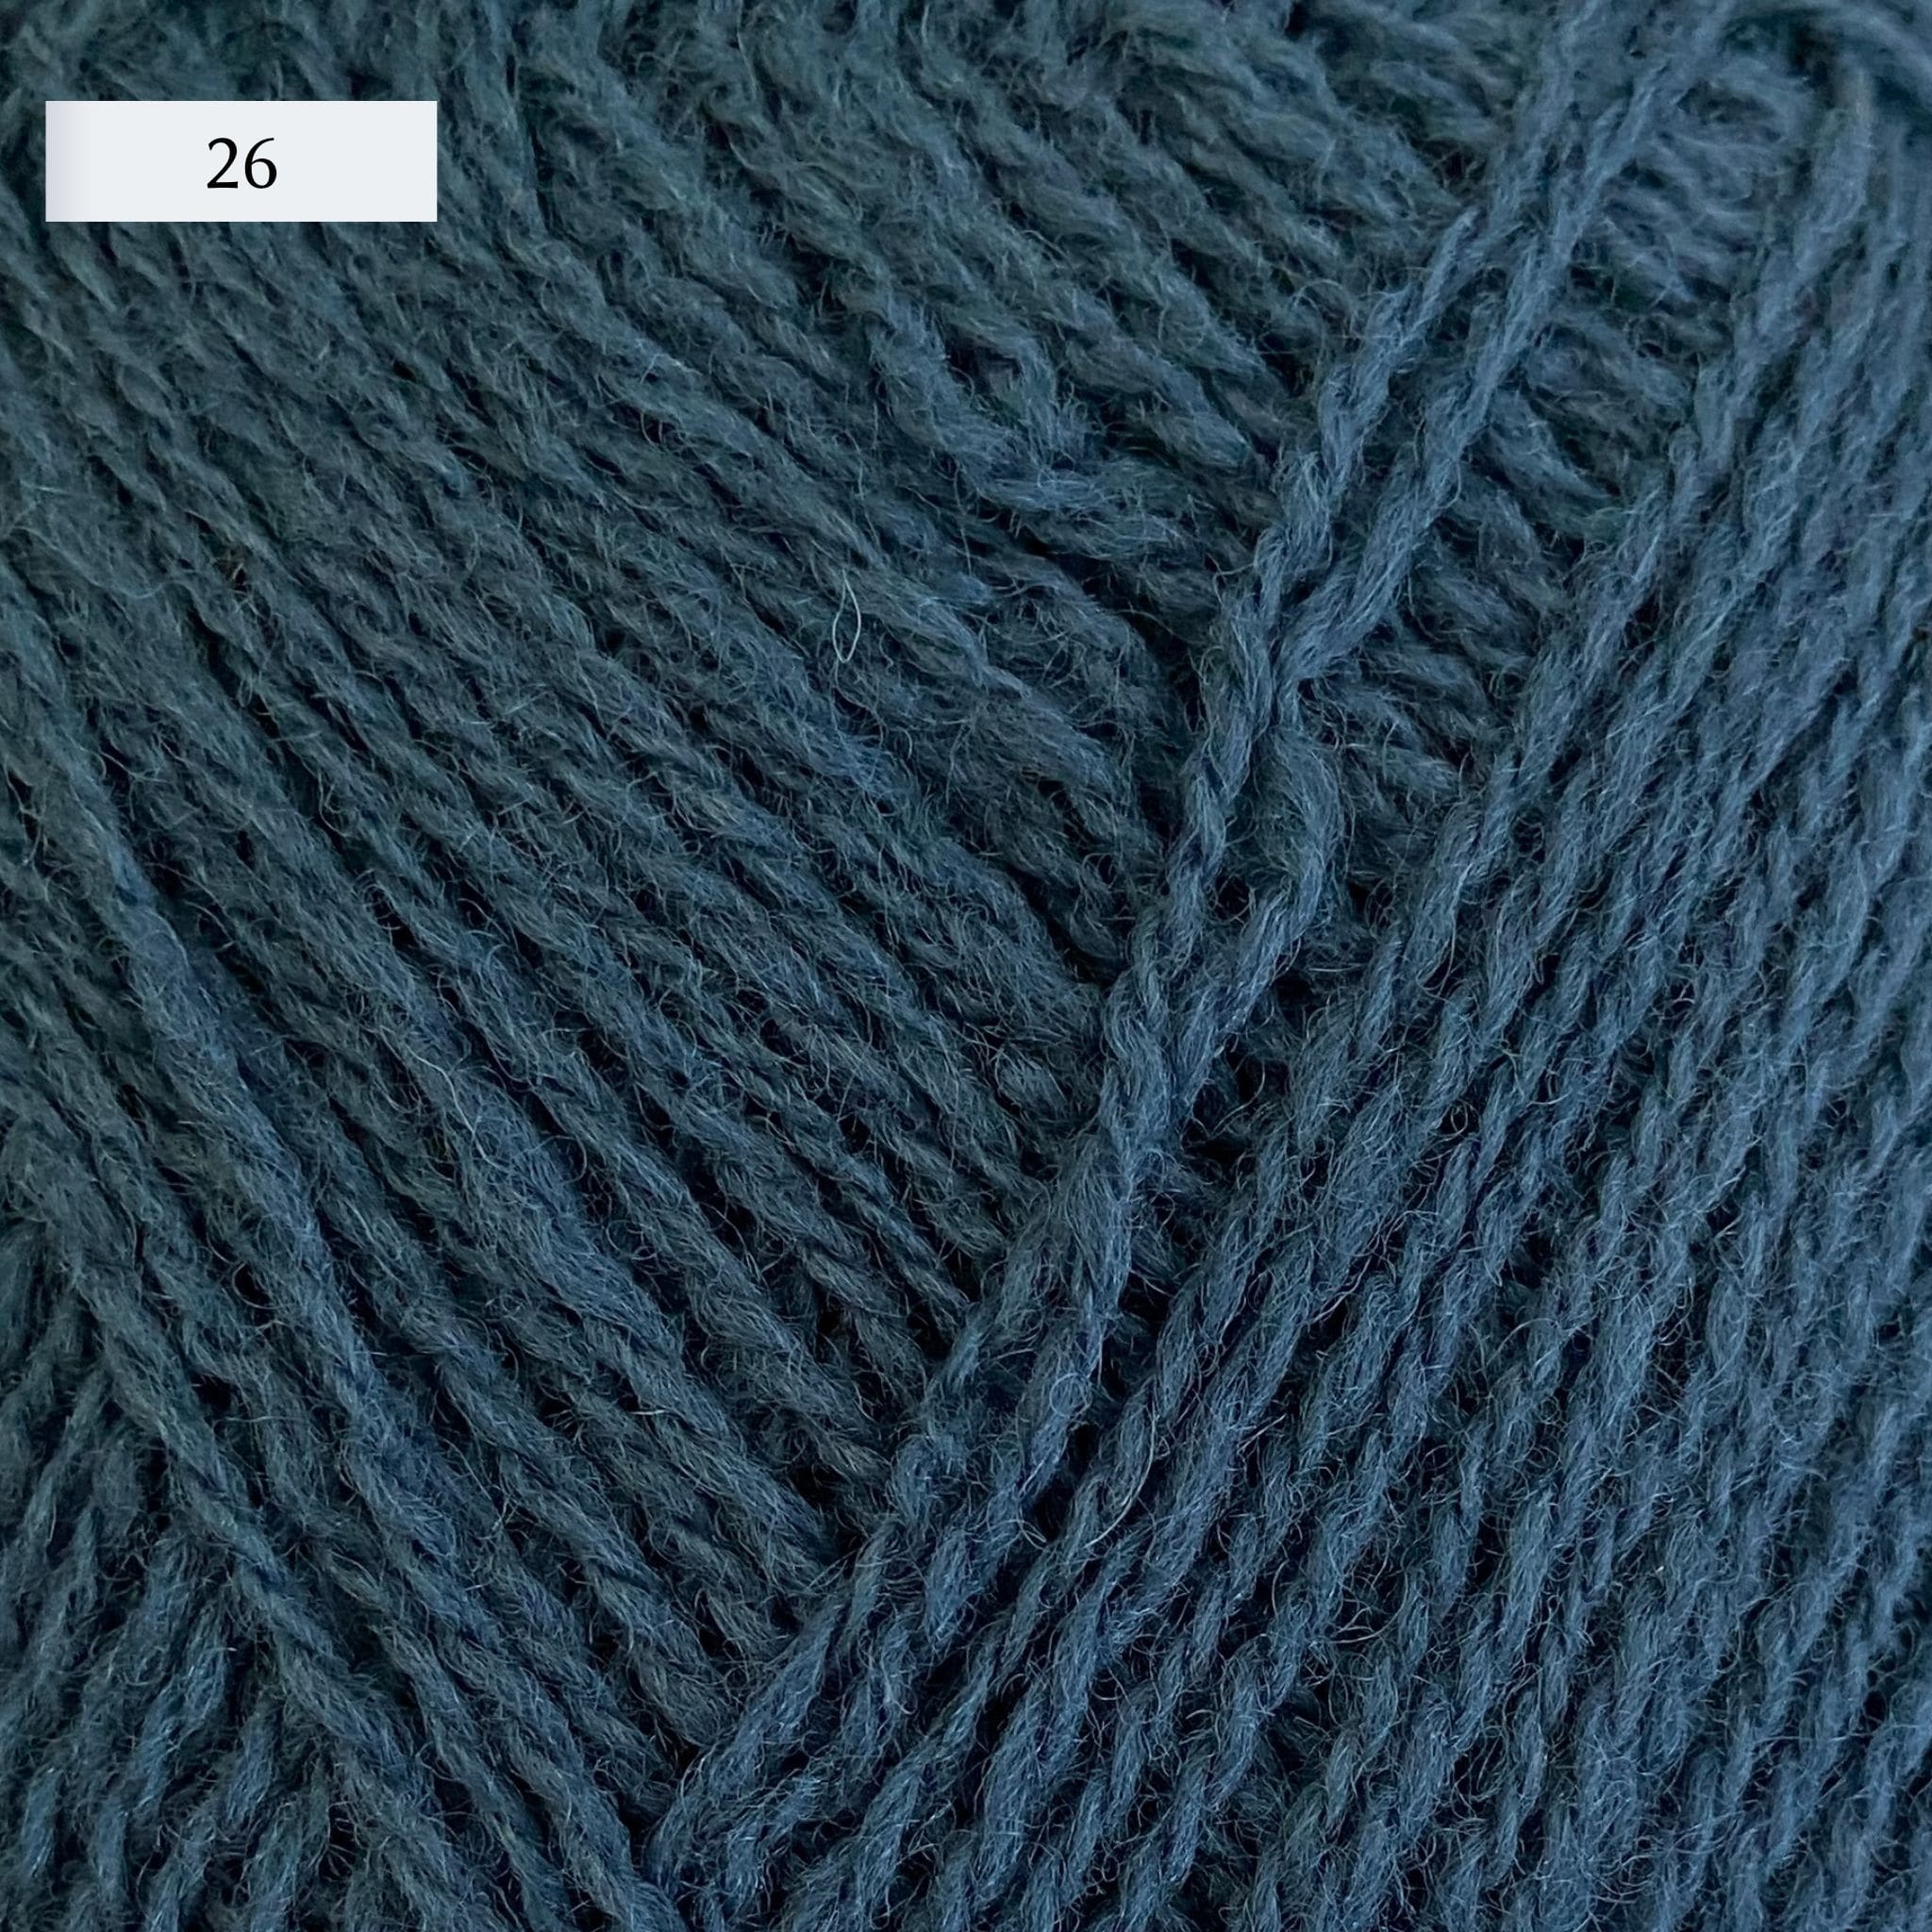 Rauma Lamullgarn, a fingering weight yarn, in color 26, a medium denim blue